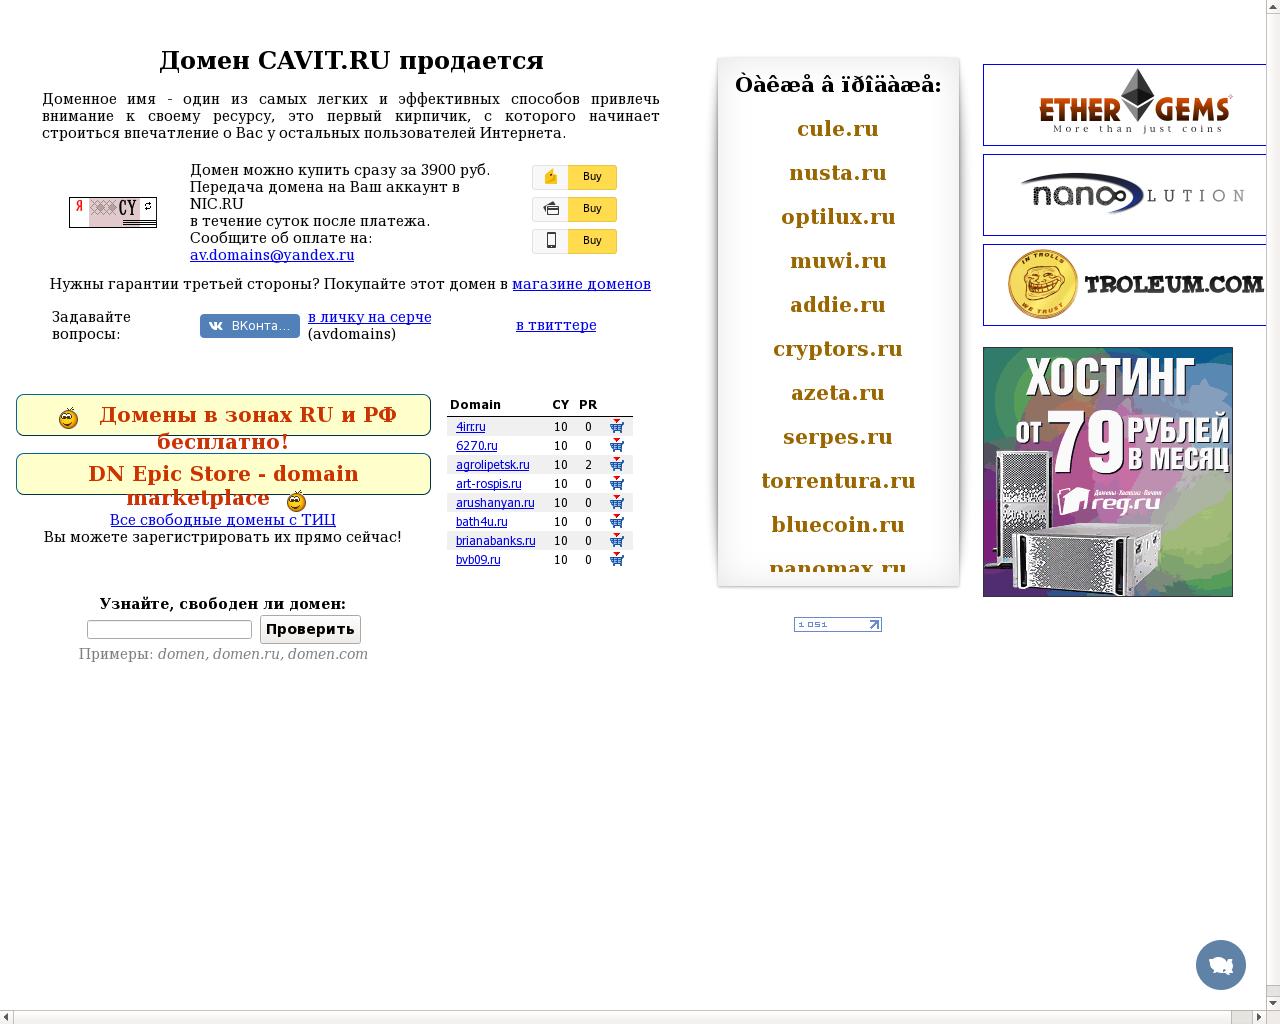 Изображение сайта cavit.ru в разрешении 1280x1024